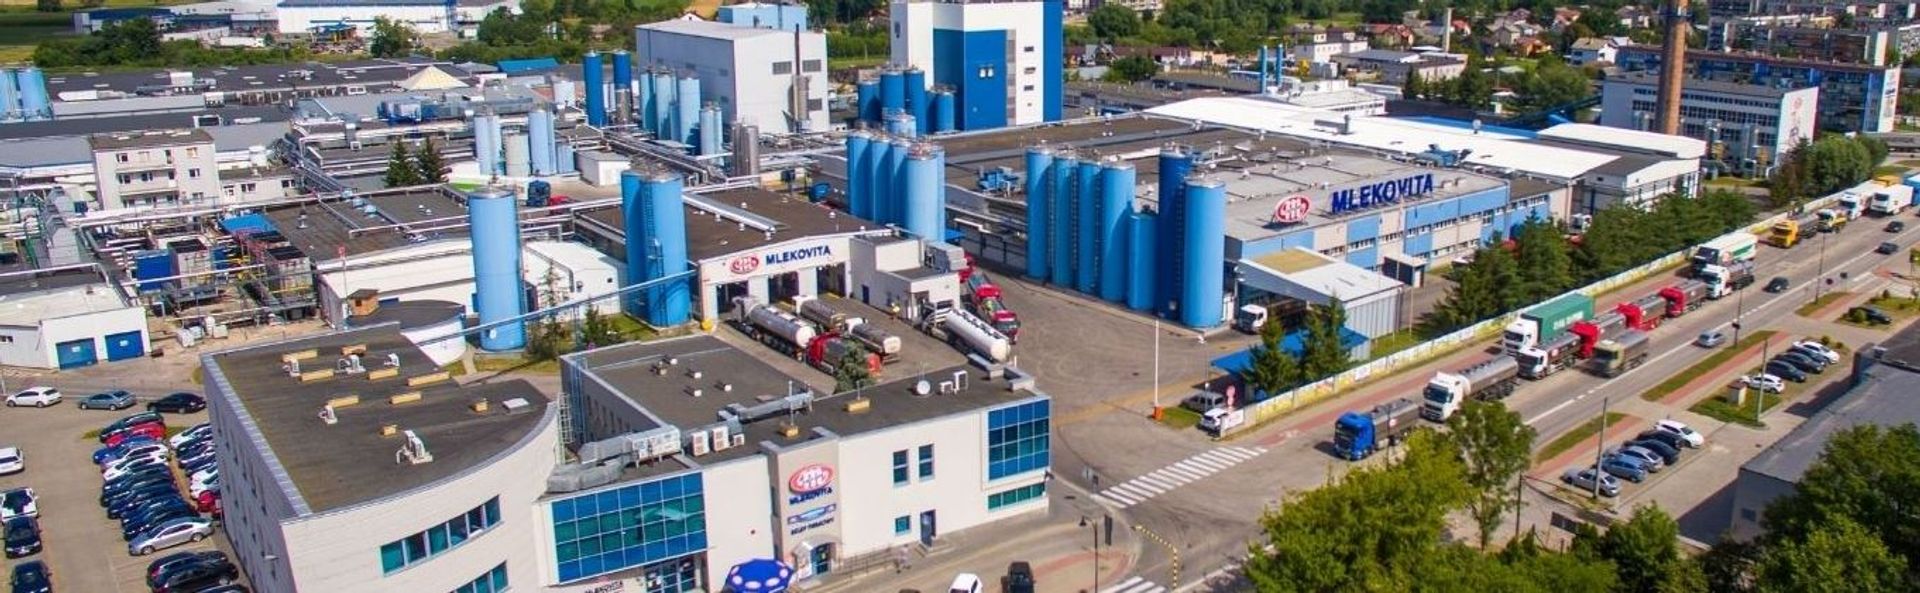 Mlekovita zainwestuje ponad ćwierć miliarda złotych w nową fabrykę mleka UHT 